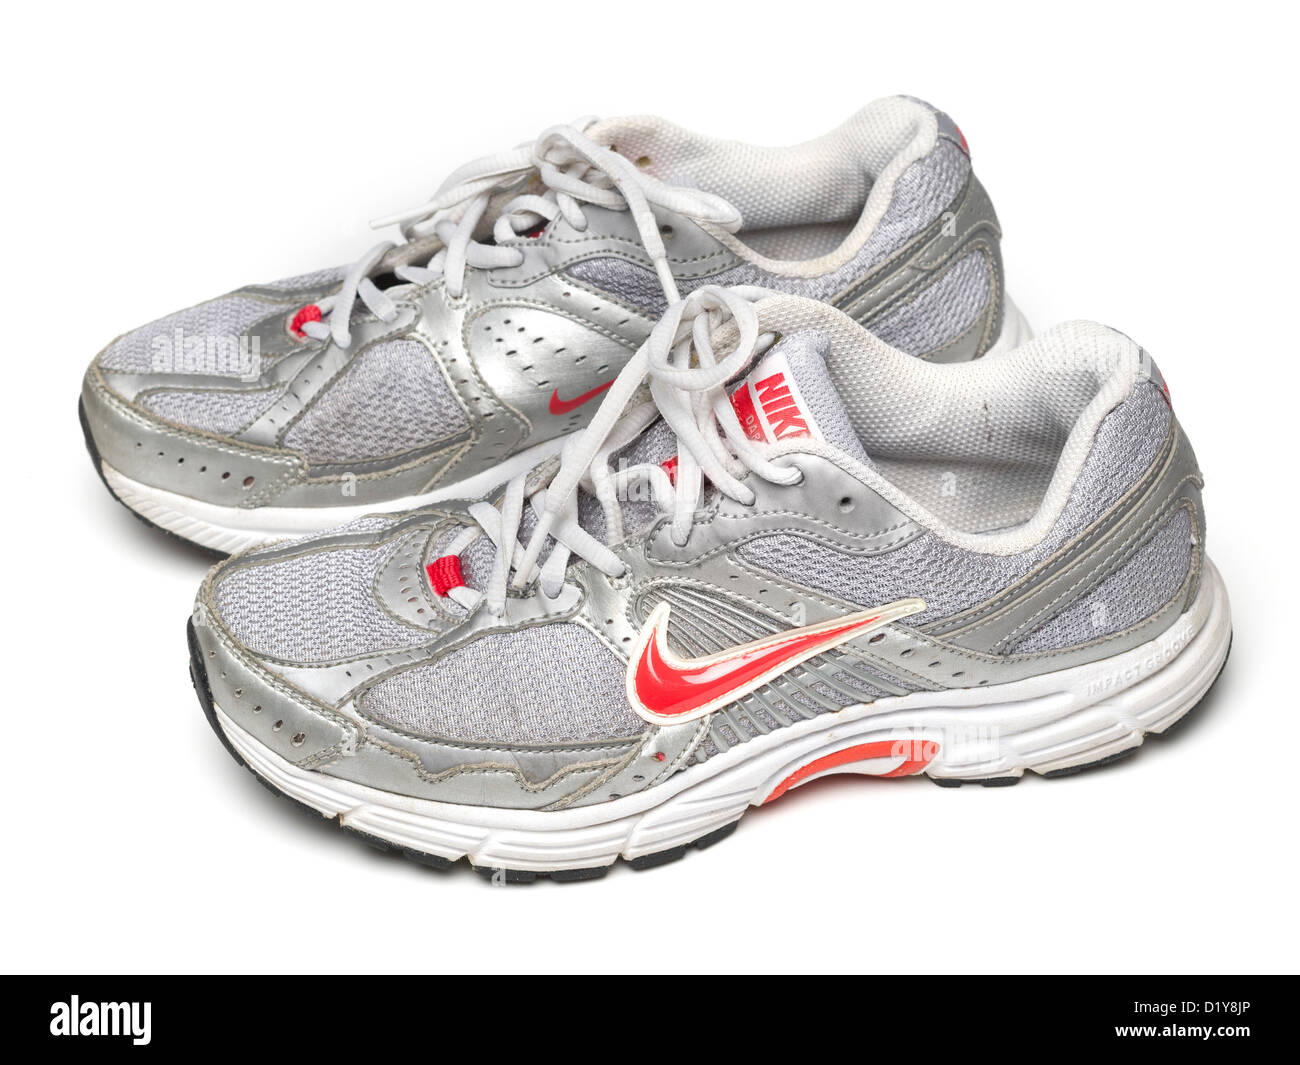 Chaussures de course Nike gris isolé sur fond blanc Photo Stock - Alamy